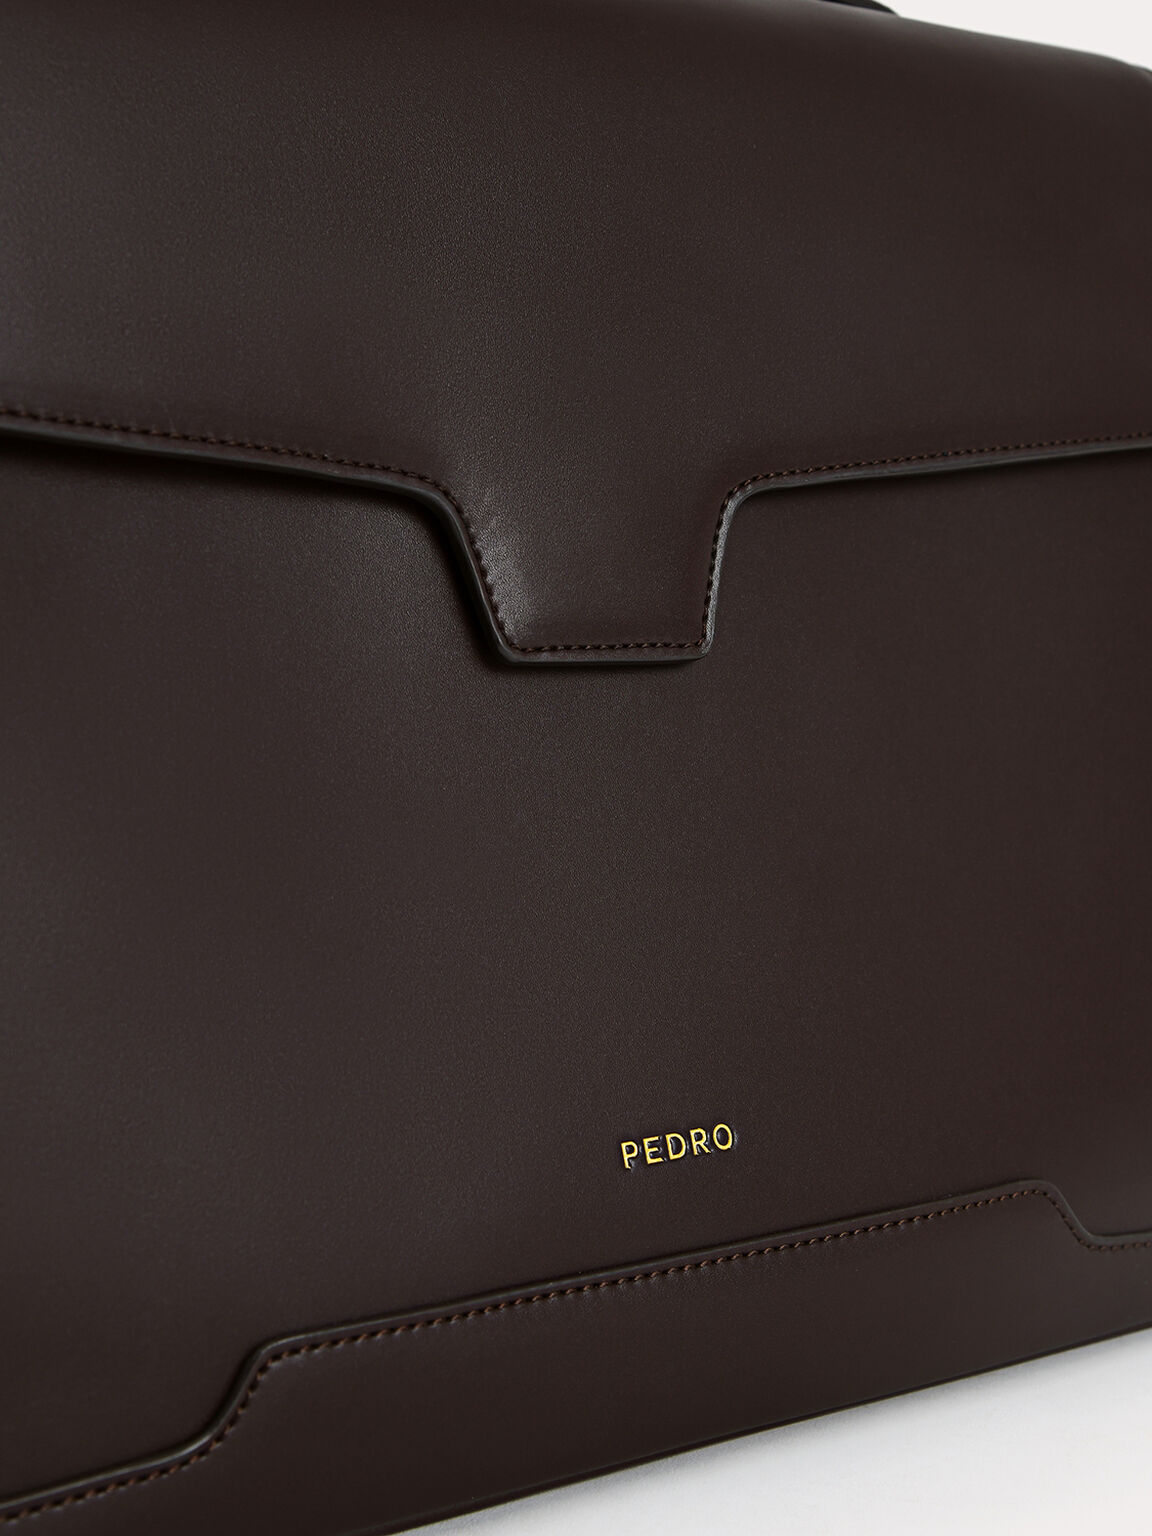 Leather Briefcase, Dark Brown